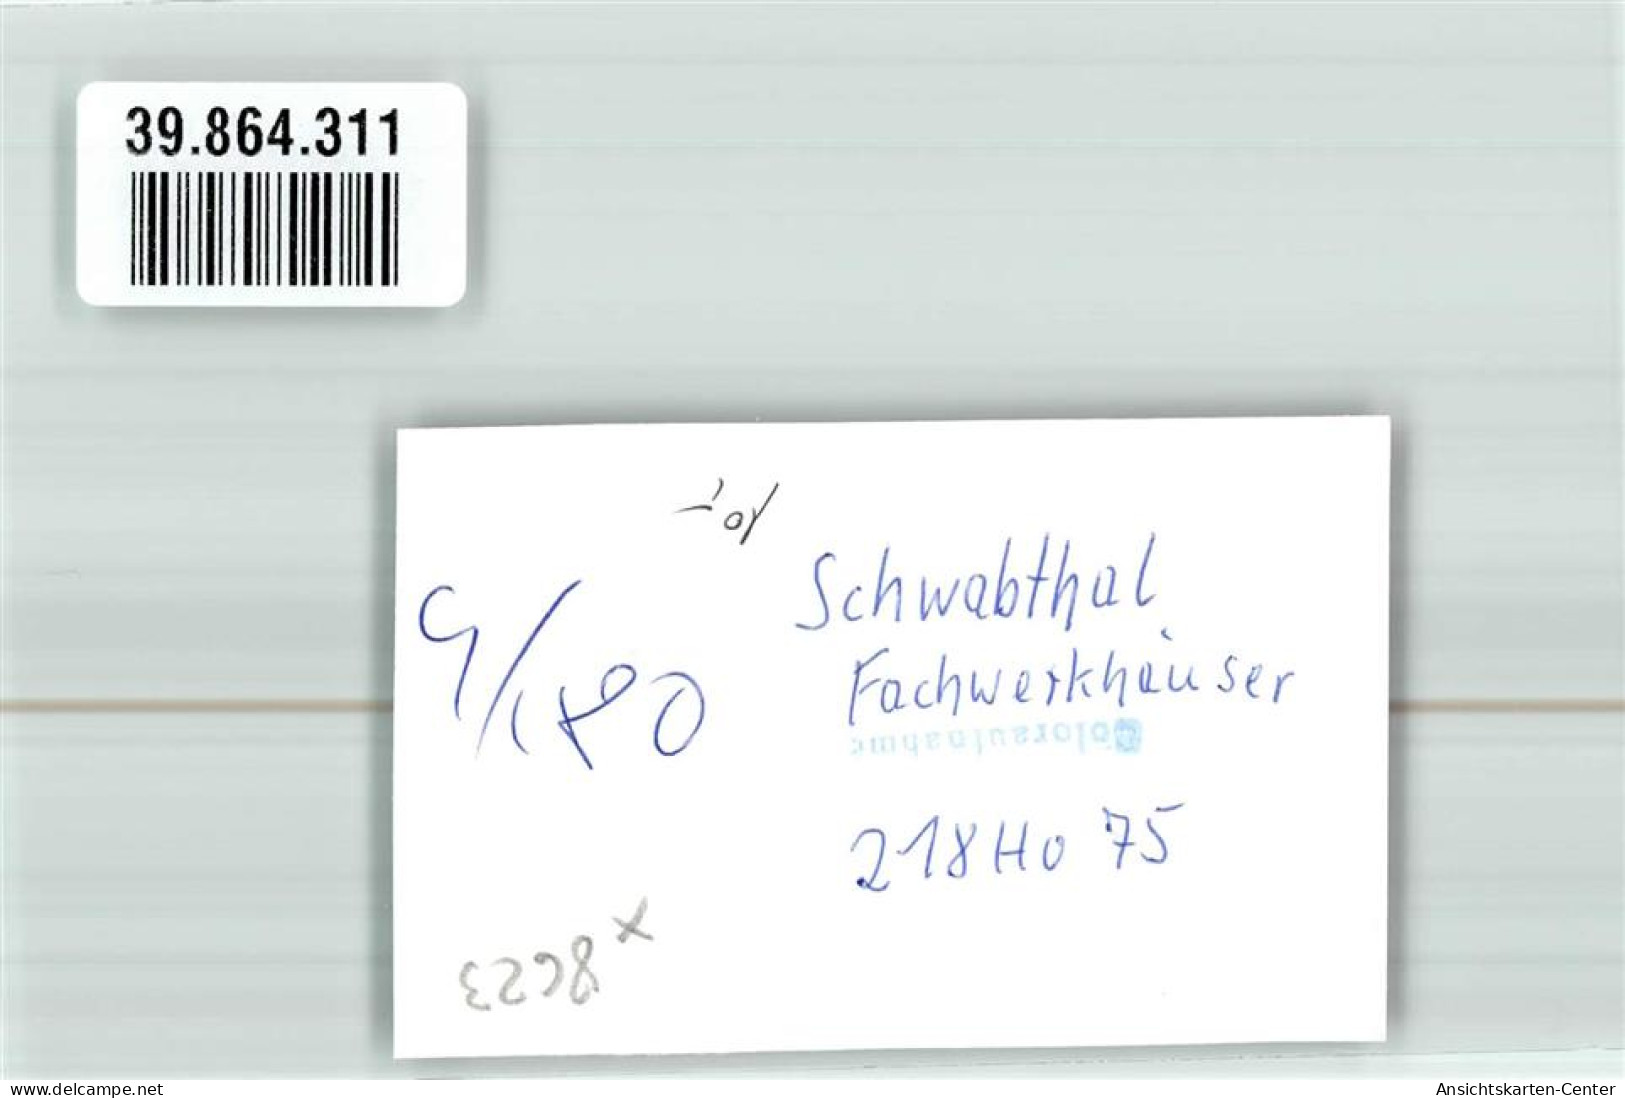 39864311 - Schwabthal - Staffelstein